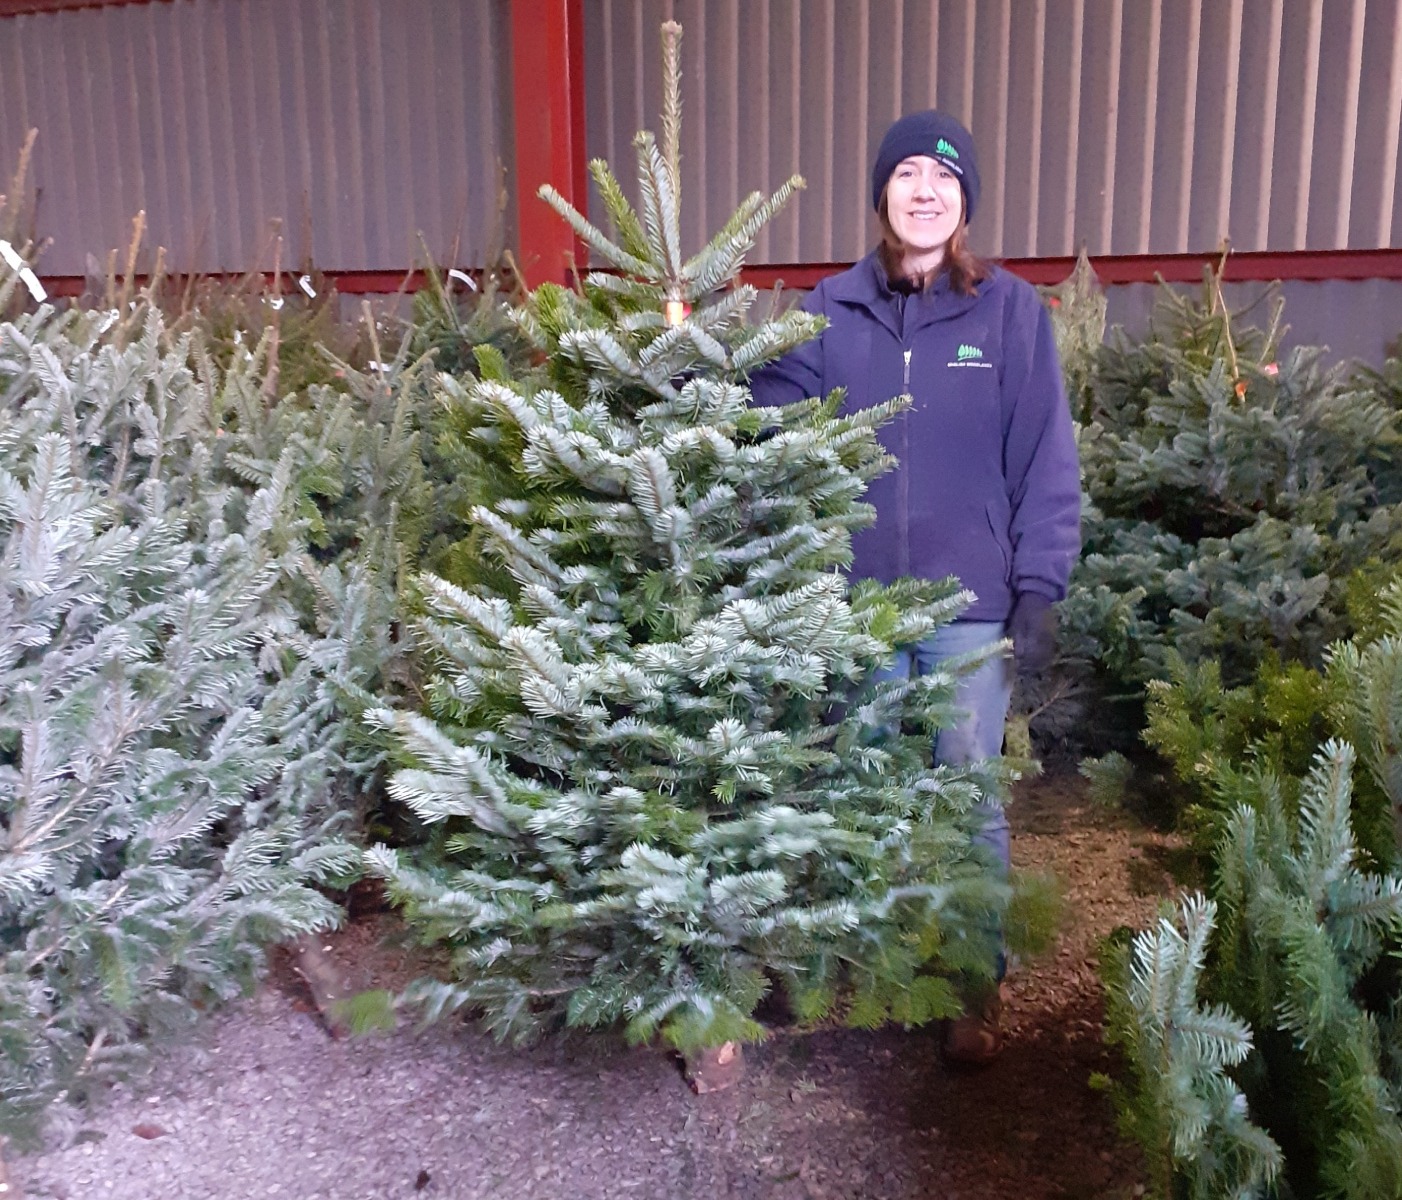 Nordmann non drop Christmas tree